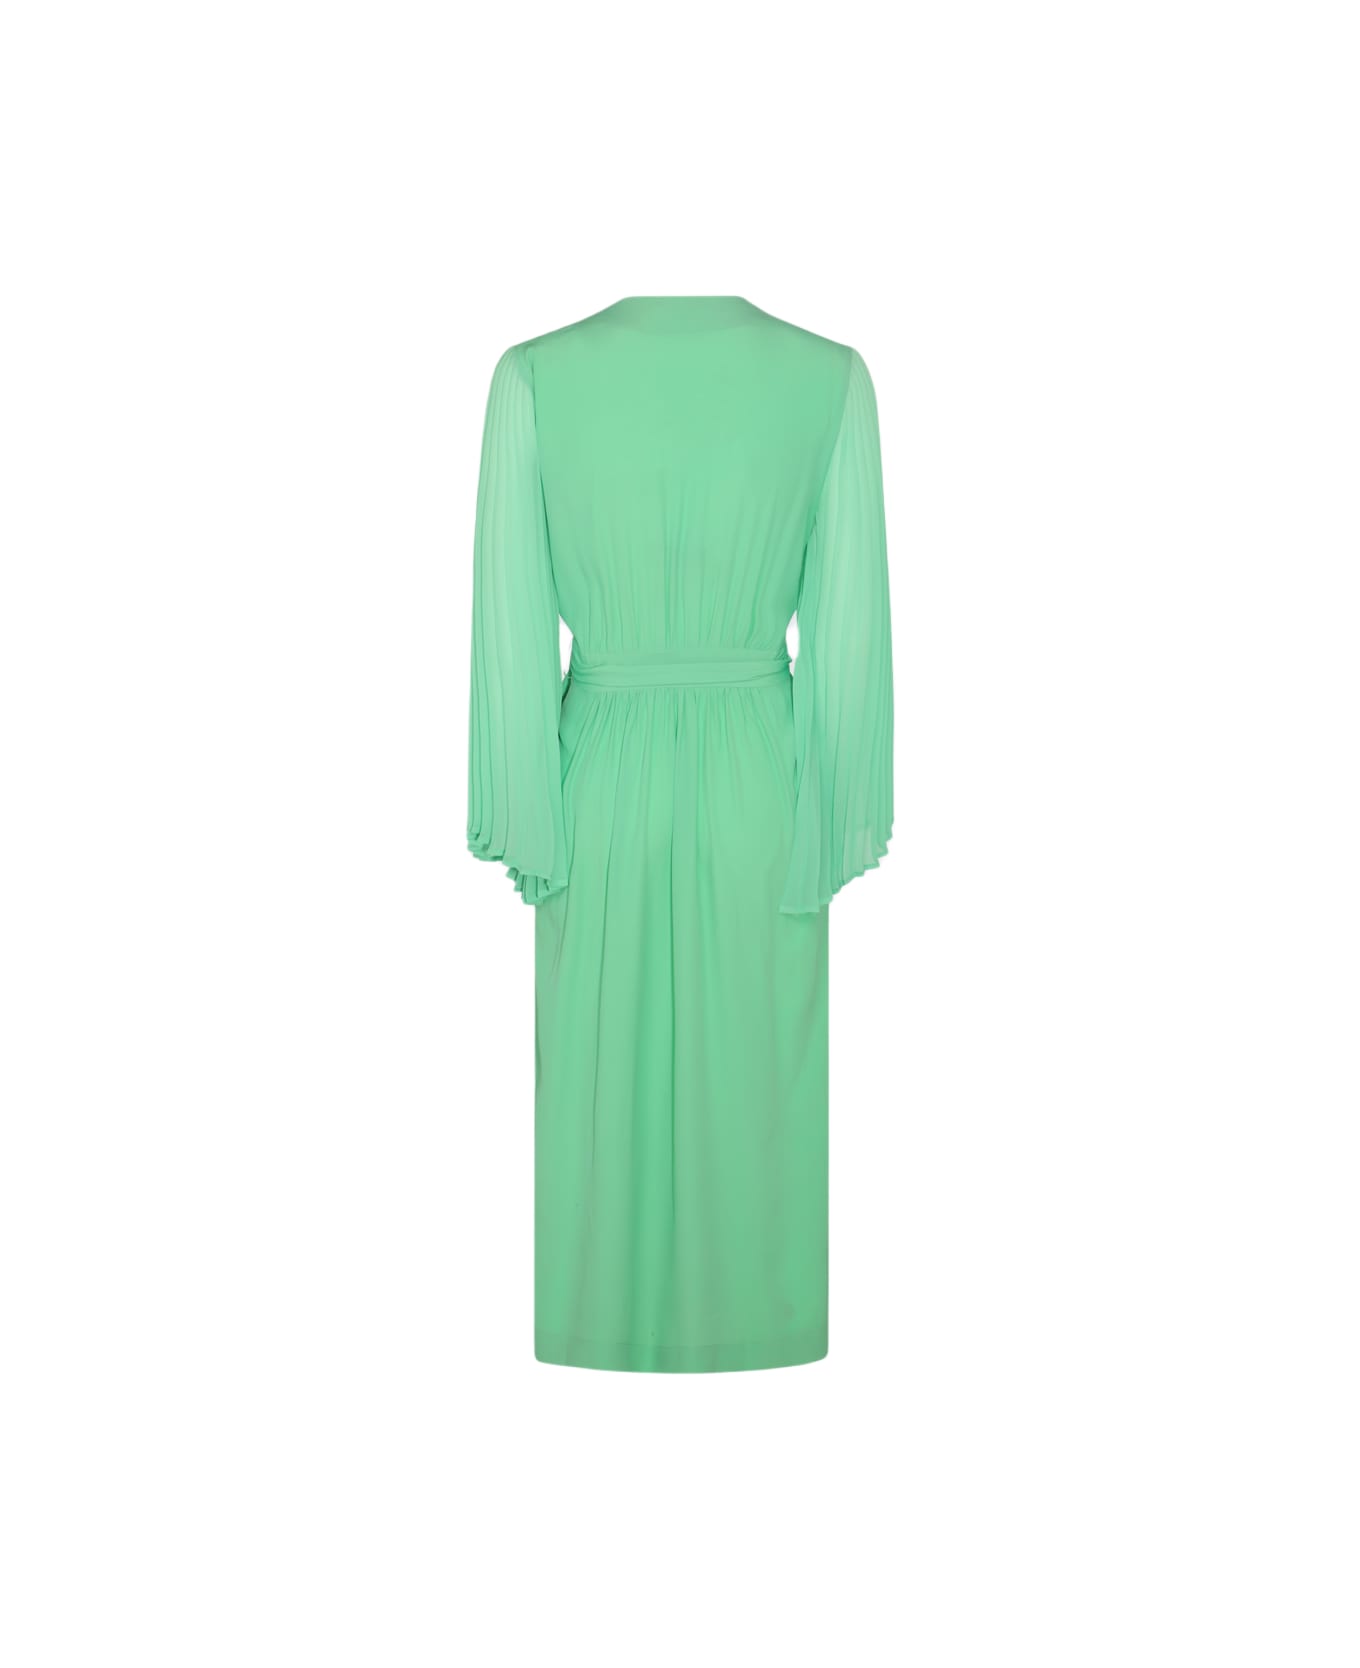 Dries Van Noten Light Green Silk Blend Dress - LIGHT GREEN